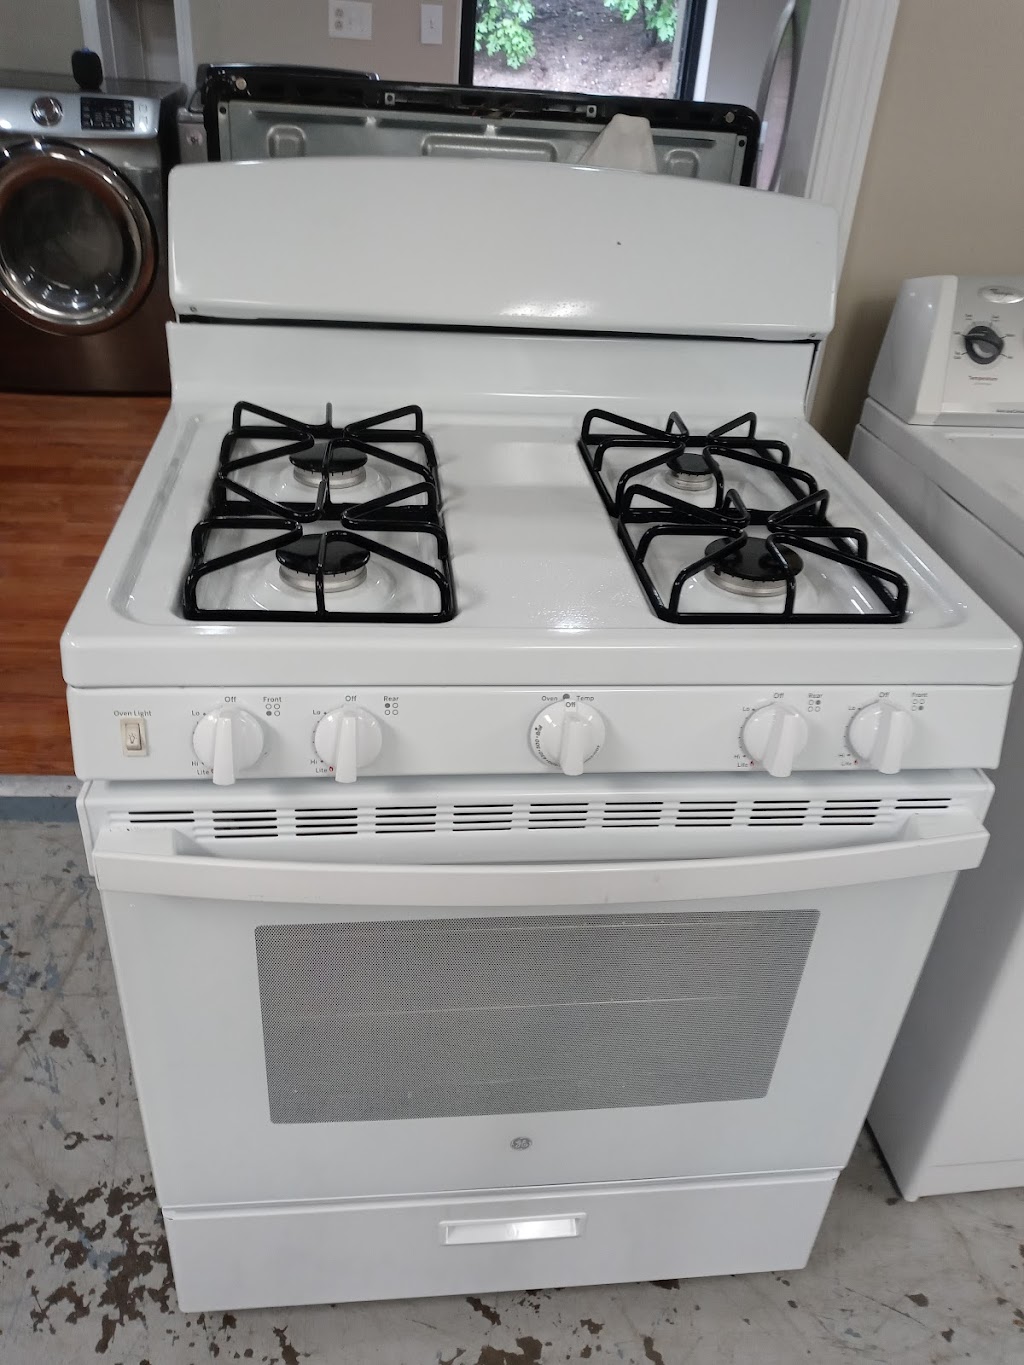 TG Pre-owned Appliances | 966 Pine St, Plainville, CT 06062 | Phone: (860) 261-7084